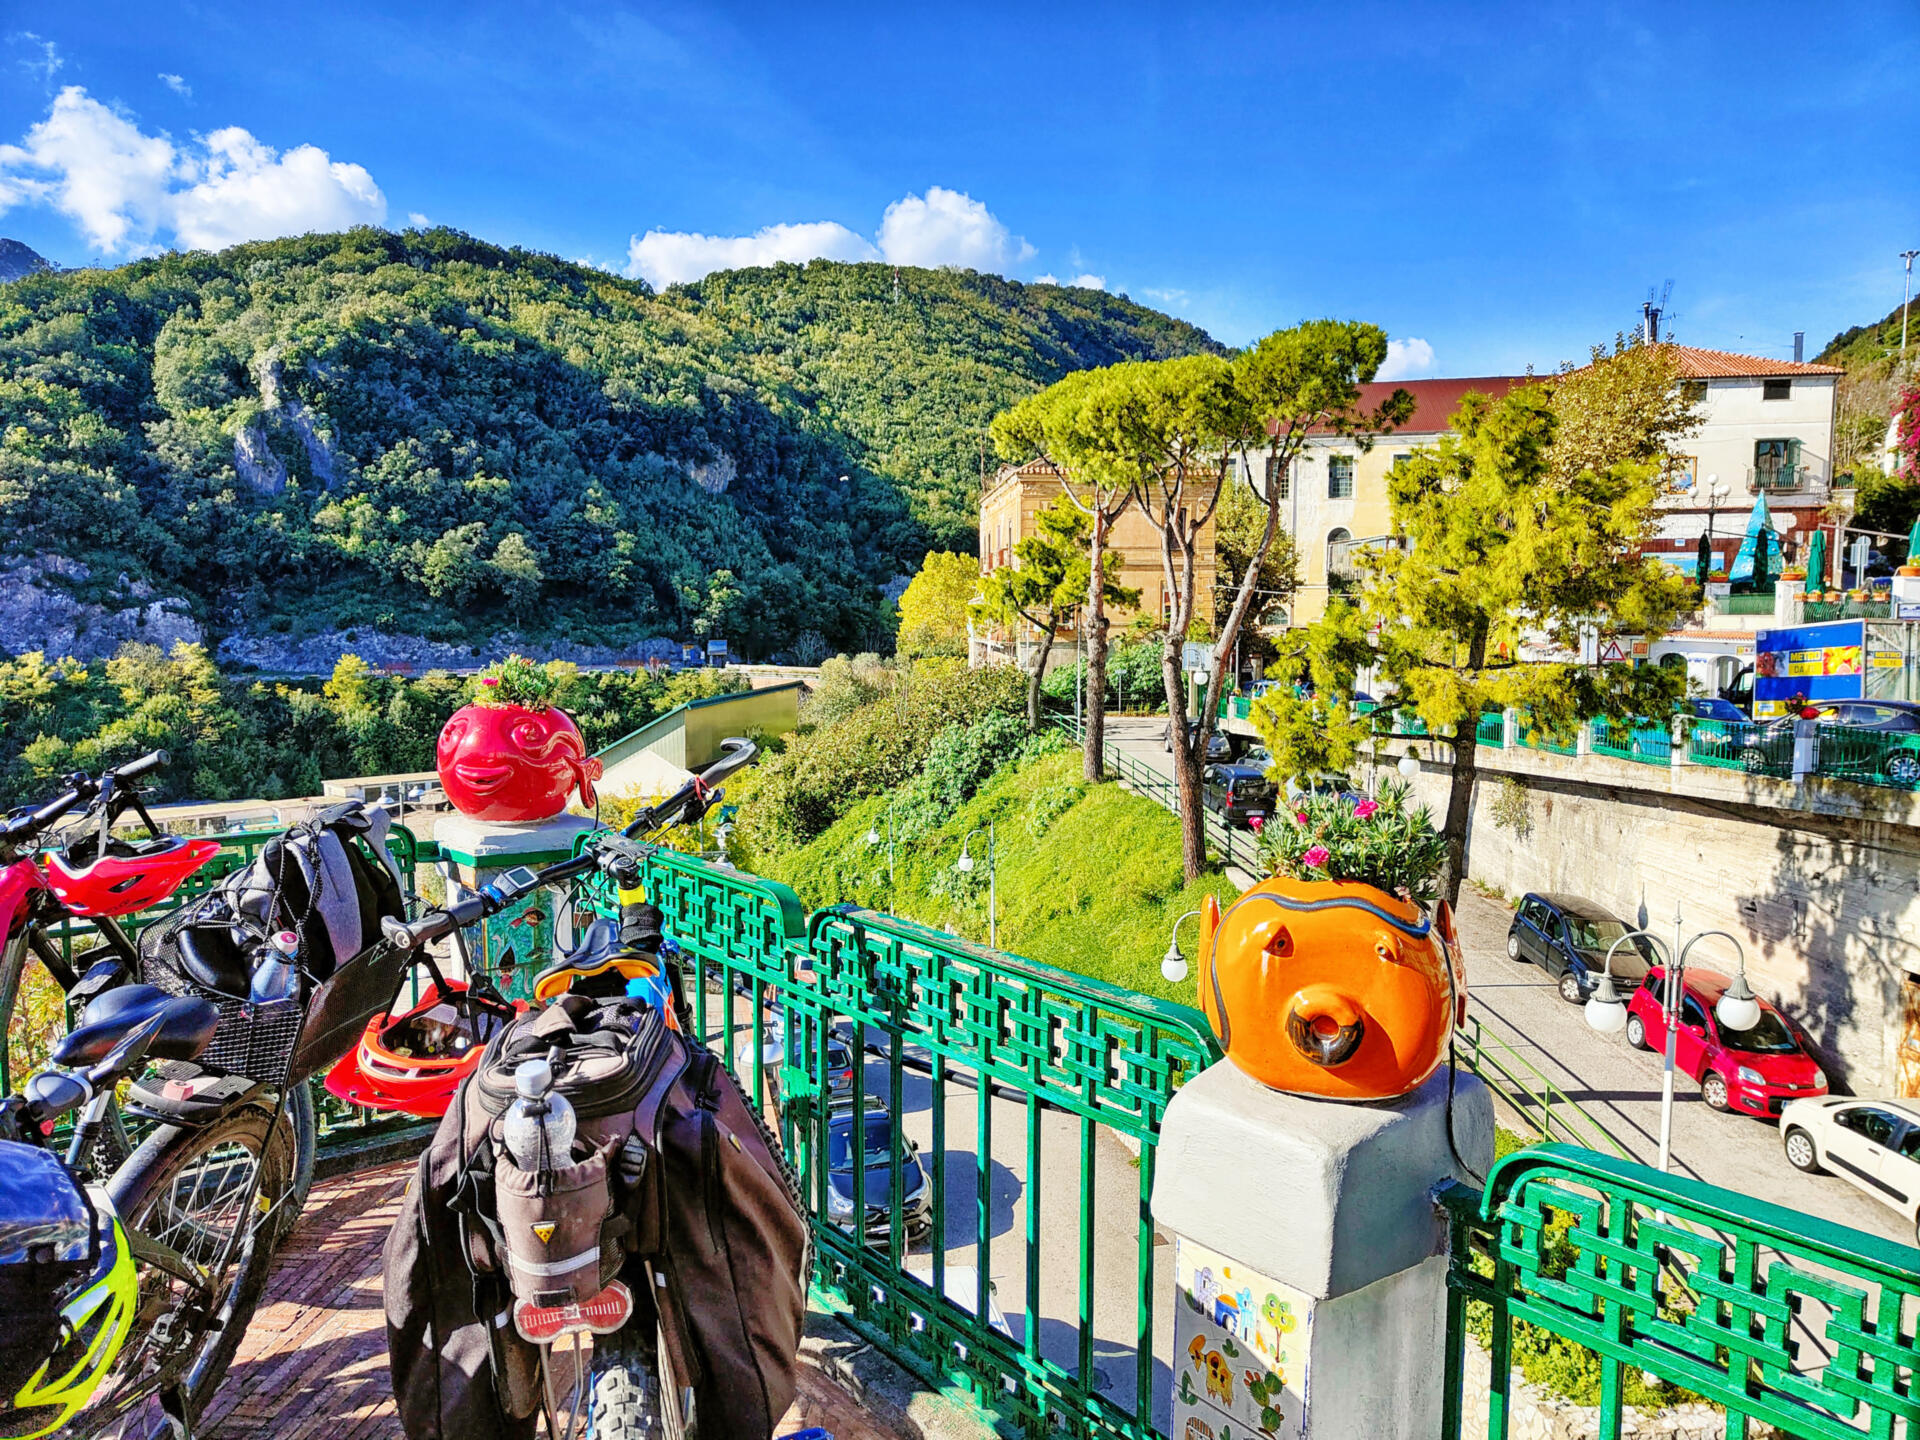 Diese Radtour, zwischen Cinque Terre und der toskanischen Versilia – Küste, ist an Abwechslung kaum zu überbieten. Beeindruckende Touren zwischen Ligurien und der Toskana hoch über dem Meer, bieten Ausblicke auf die berühmten Orte der Cinque Terre sowie die Marmorsteinbrüche bei Carrara.